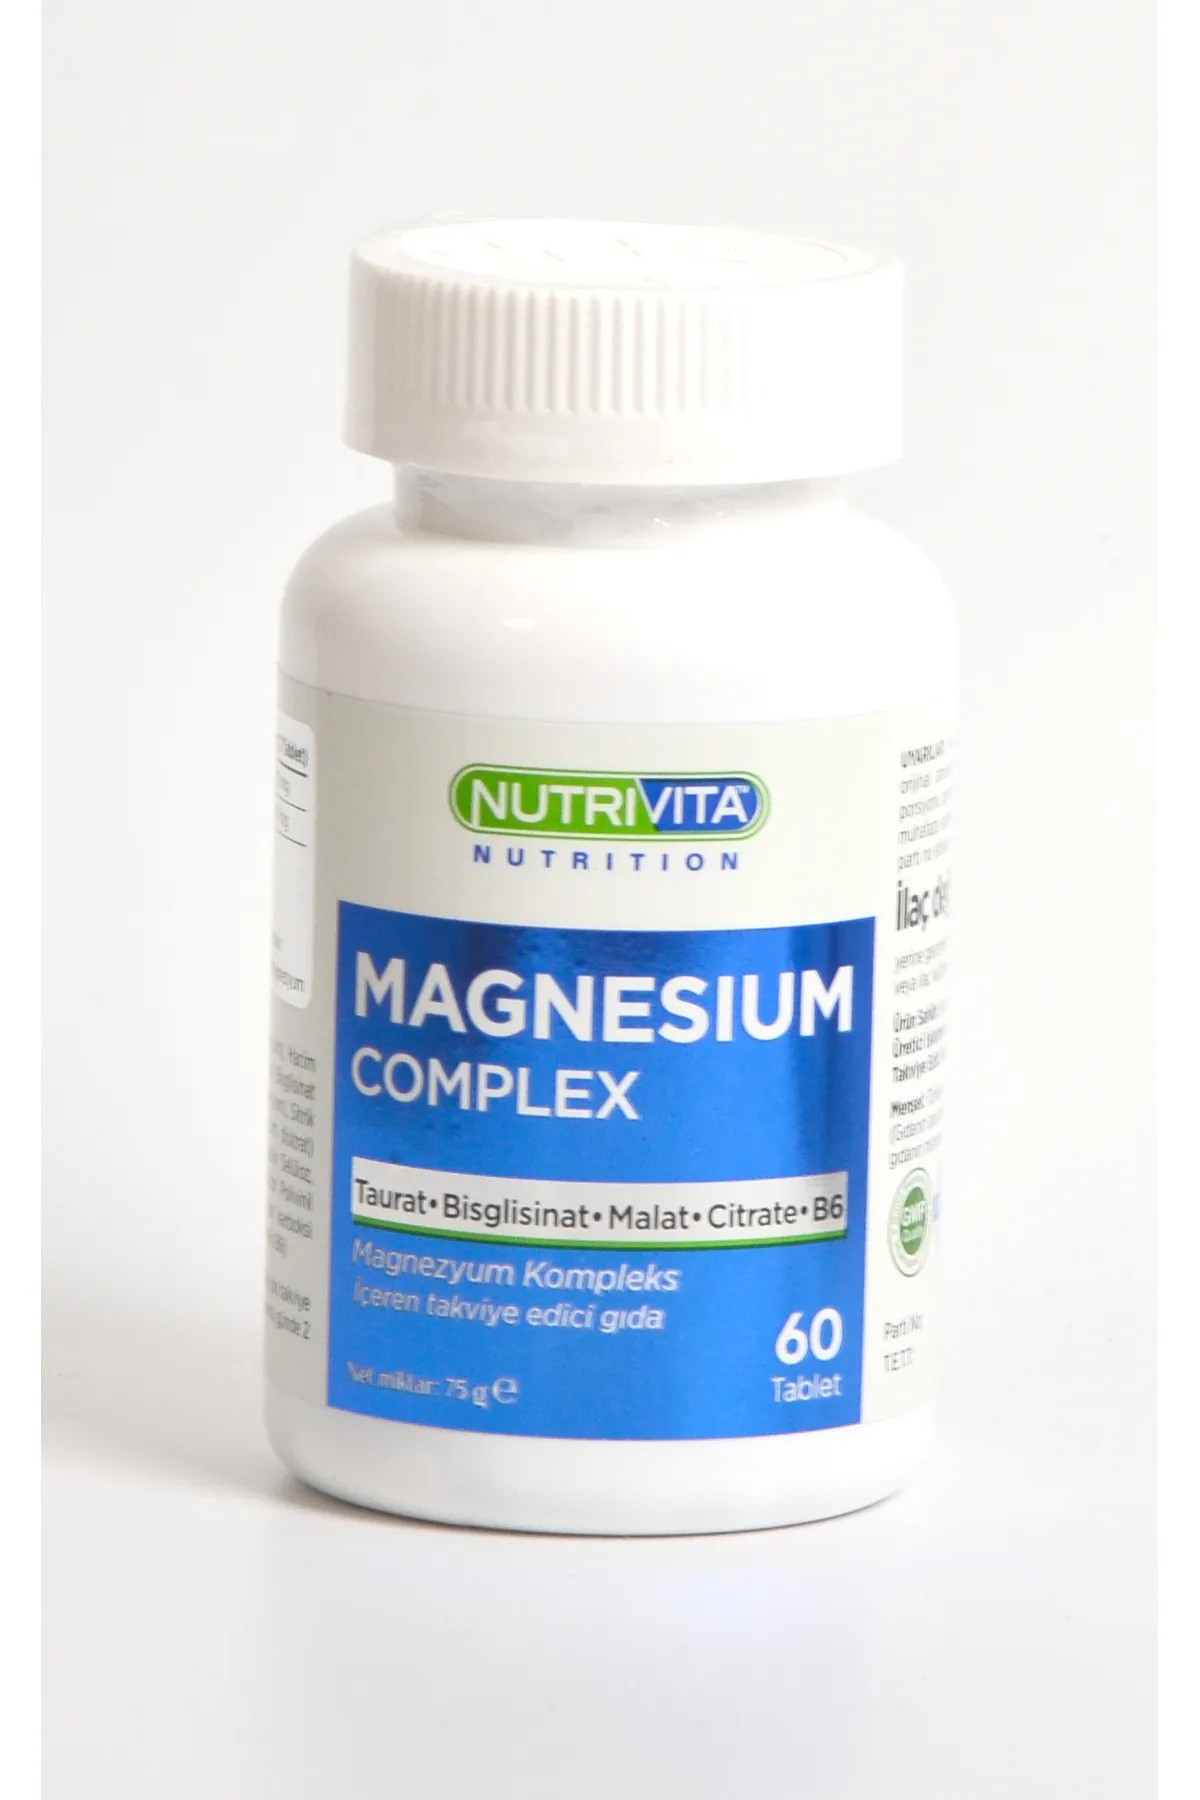 Nutrivita Magnesium Complex 60 tablet Magnezyum